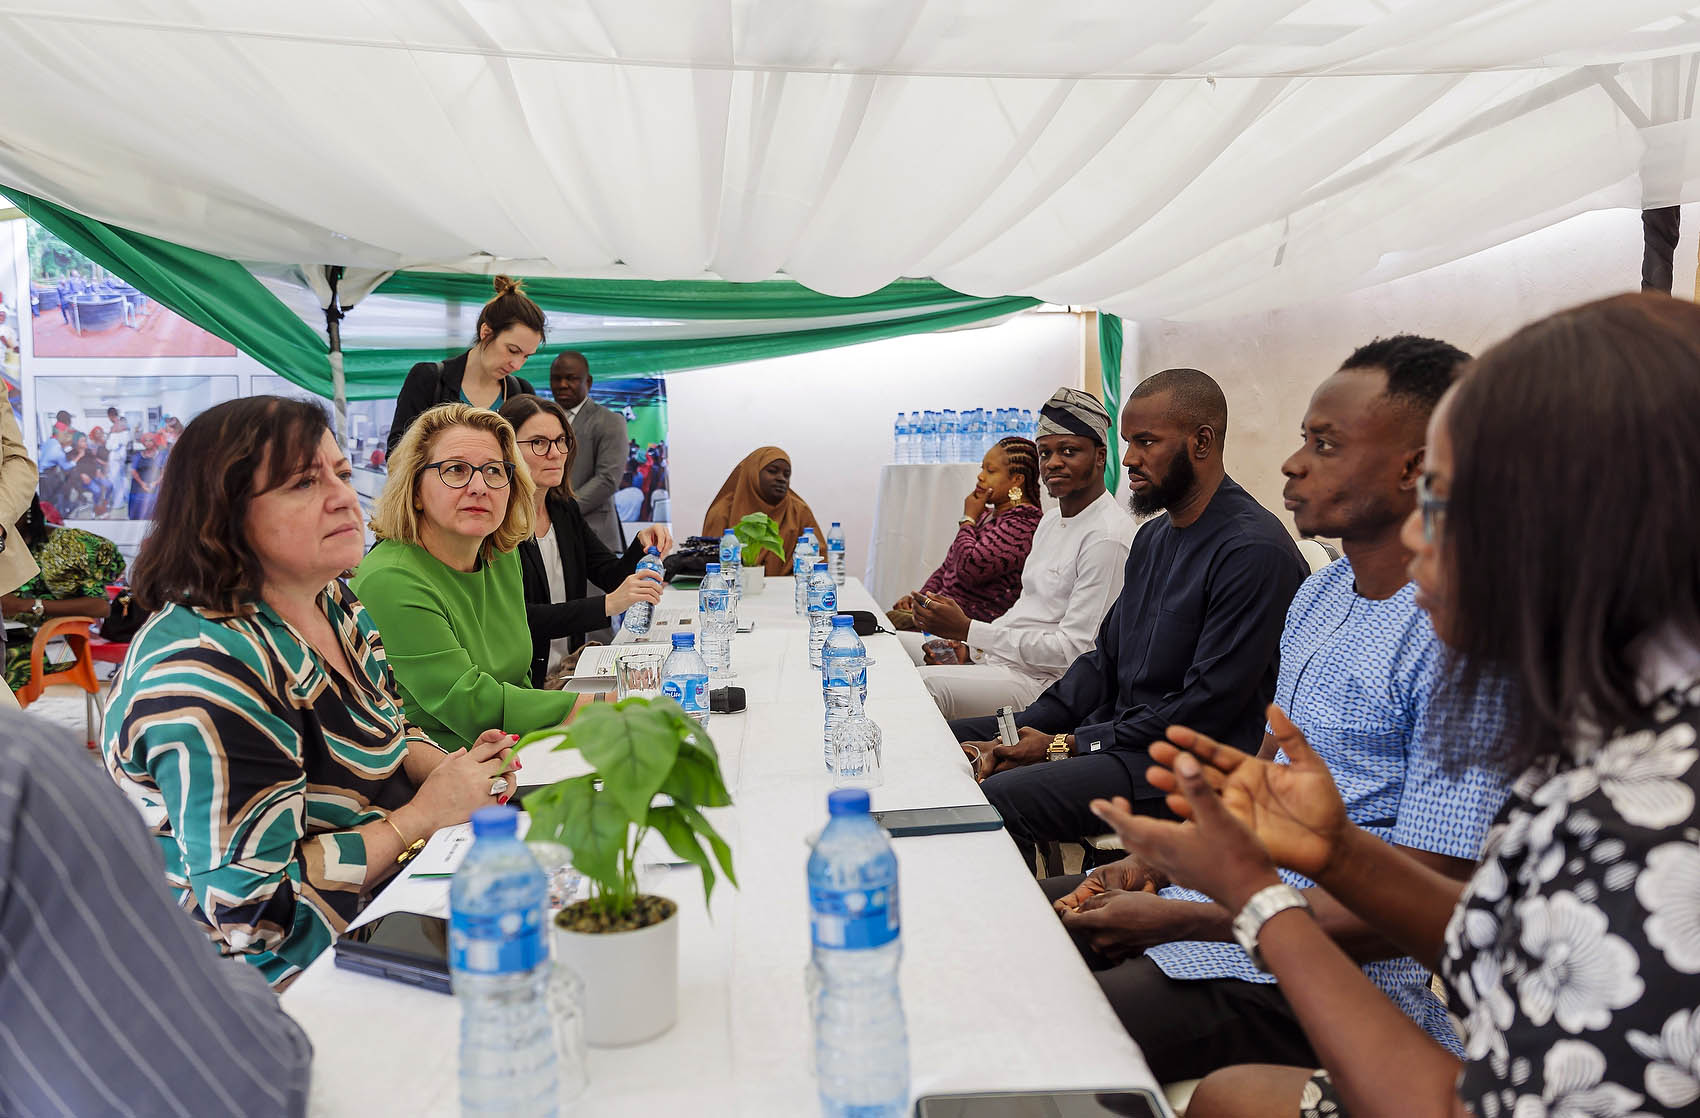 Entwicklungsministerin Svenja Schulze und die Parlamentarische Staatssekretärin Dr. Bärbel Kofler im Gespräch mit Besucherinnen und Besuchern des neueröffneten Migrationsberatungszentrums in Nyanya, Nigeria